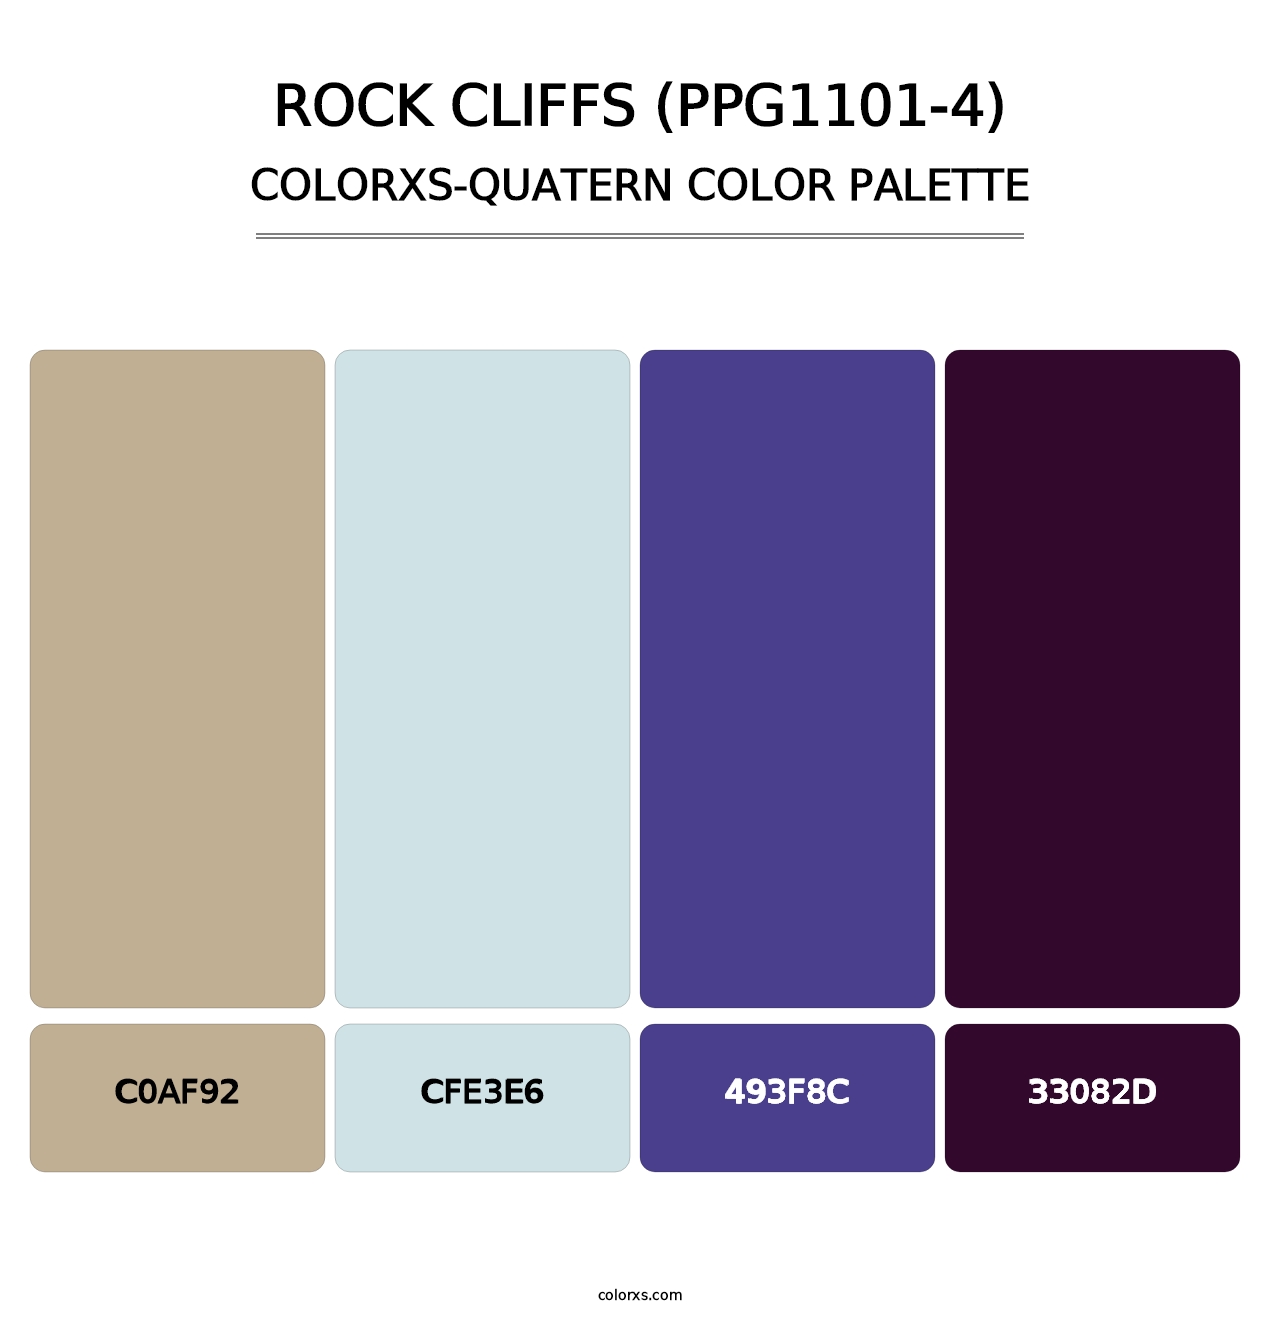 Rock Cliffs (PPG1101-4) - Colorxs Quatern Palette